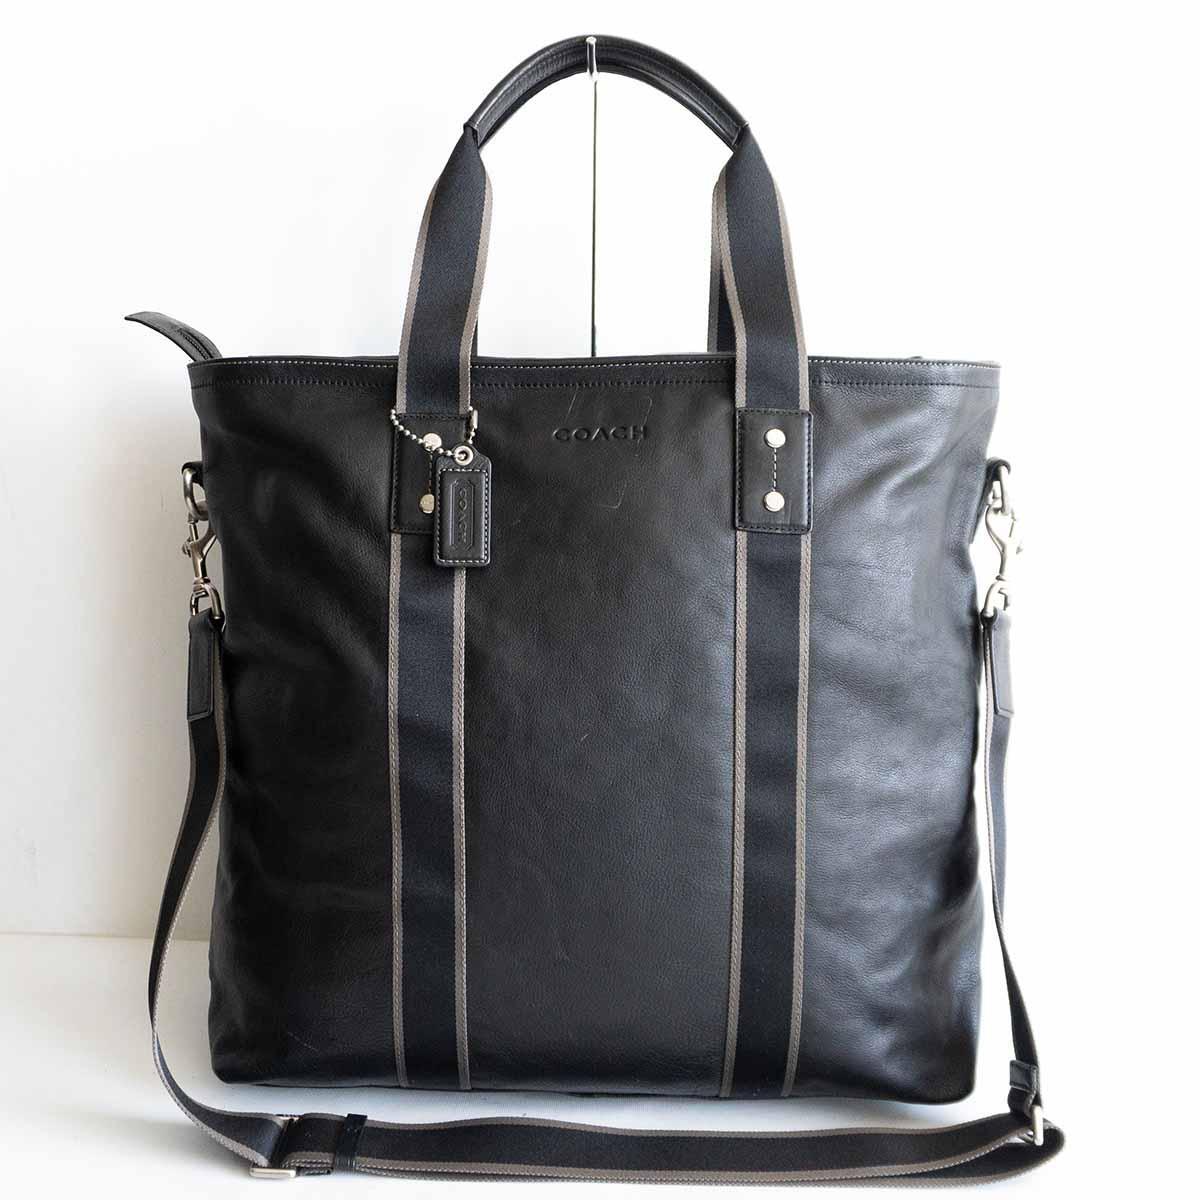 【 стандартный товар  модель  】COACH【F70560/ стирание ... ...  кожа   утилита  ... 2way  сумка для покупок 】 черный  ... сумка  ... 2405195